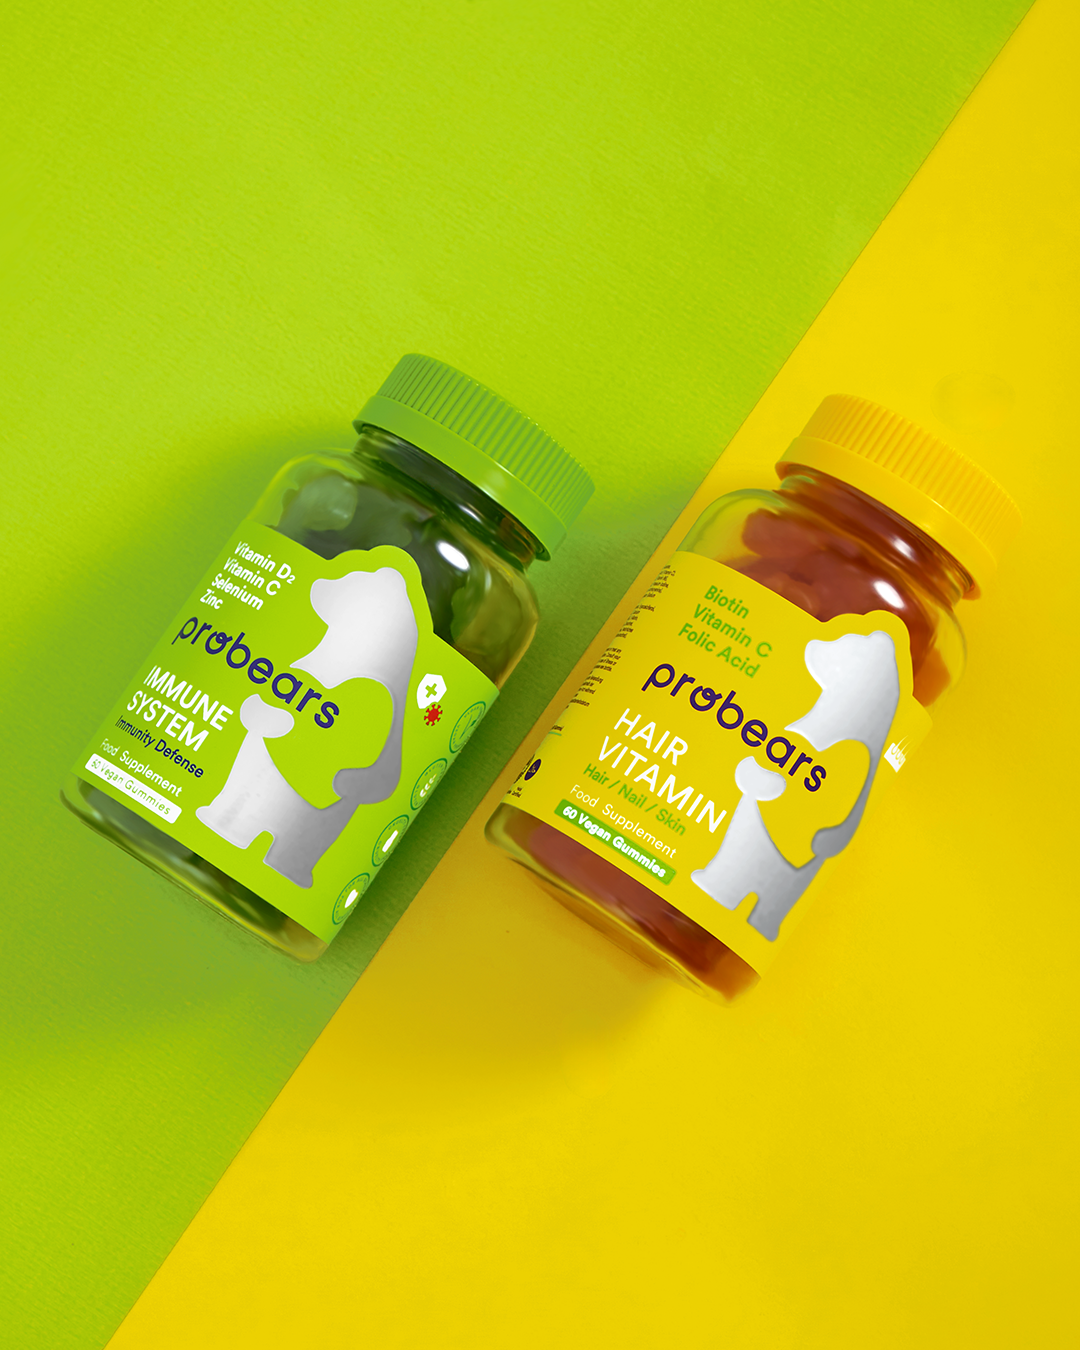 Leuchtendes Set von Probears Immune System und Hair Vitamin Gummibärchen, farbenfroh präsentiert auf gelb-grünem Hintergrund für Gesundheit und Wohlbefinden.